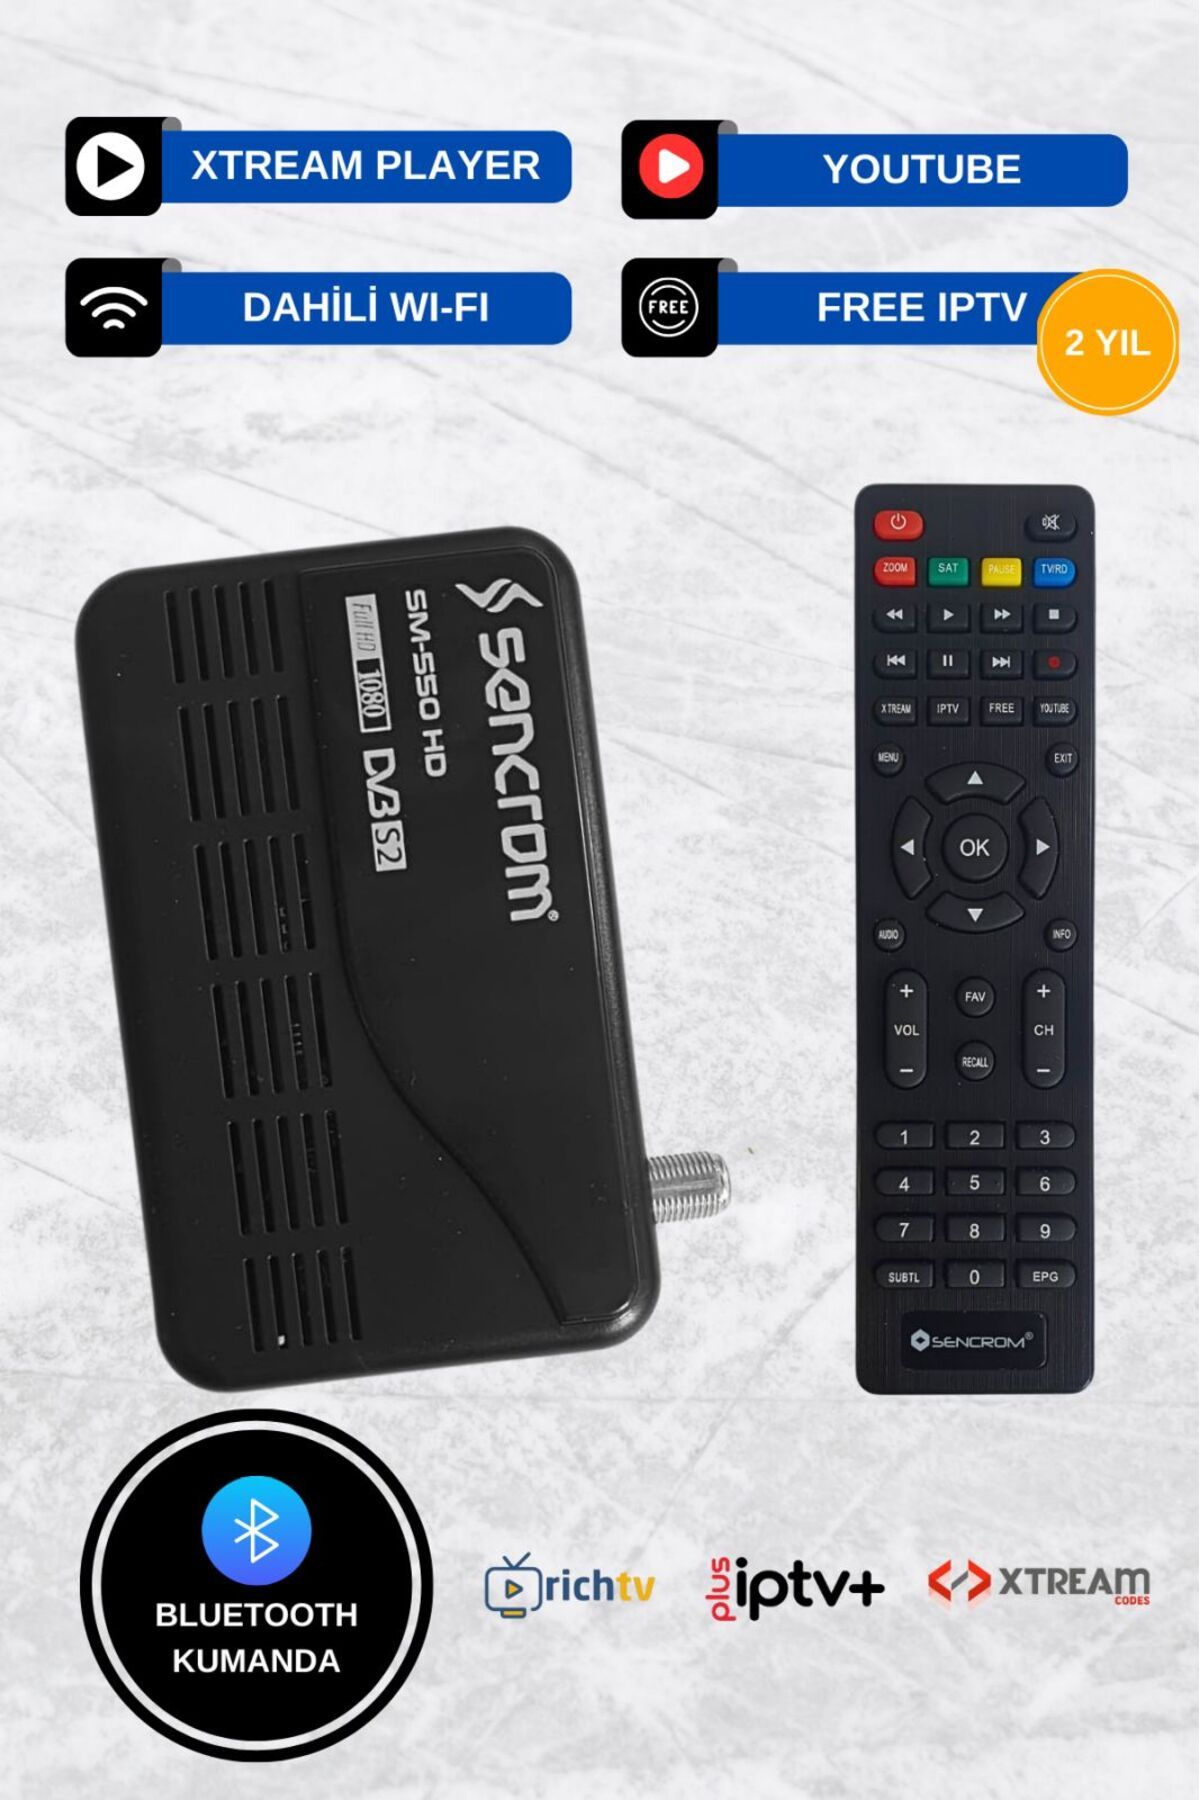 sencrom 2 Yıl Free Çanaklı Çanaksız Dahili Wi-fi Internet Tv Destekli Full Hd Uydu Alıcı Bluetooth Kumandalı